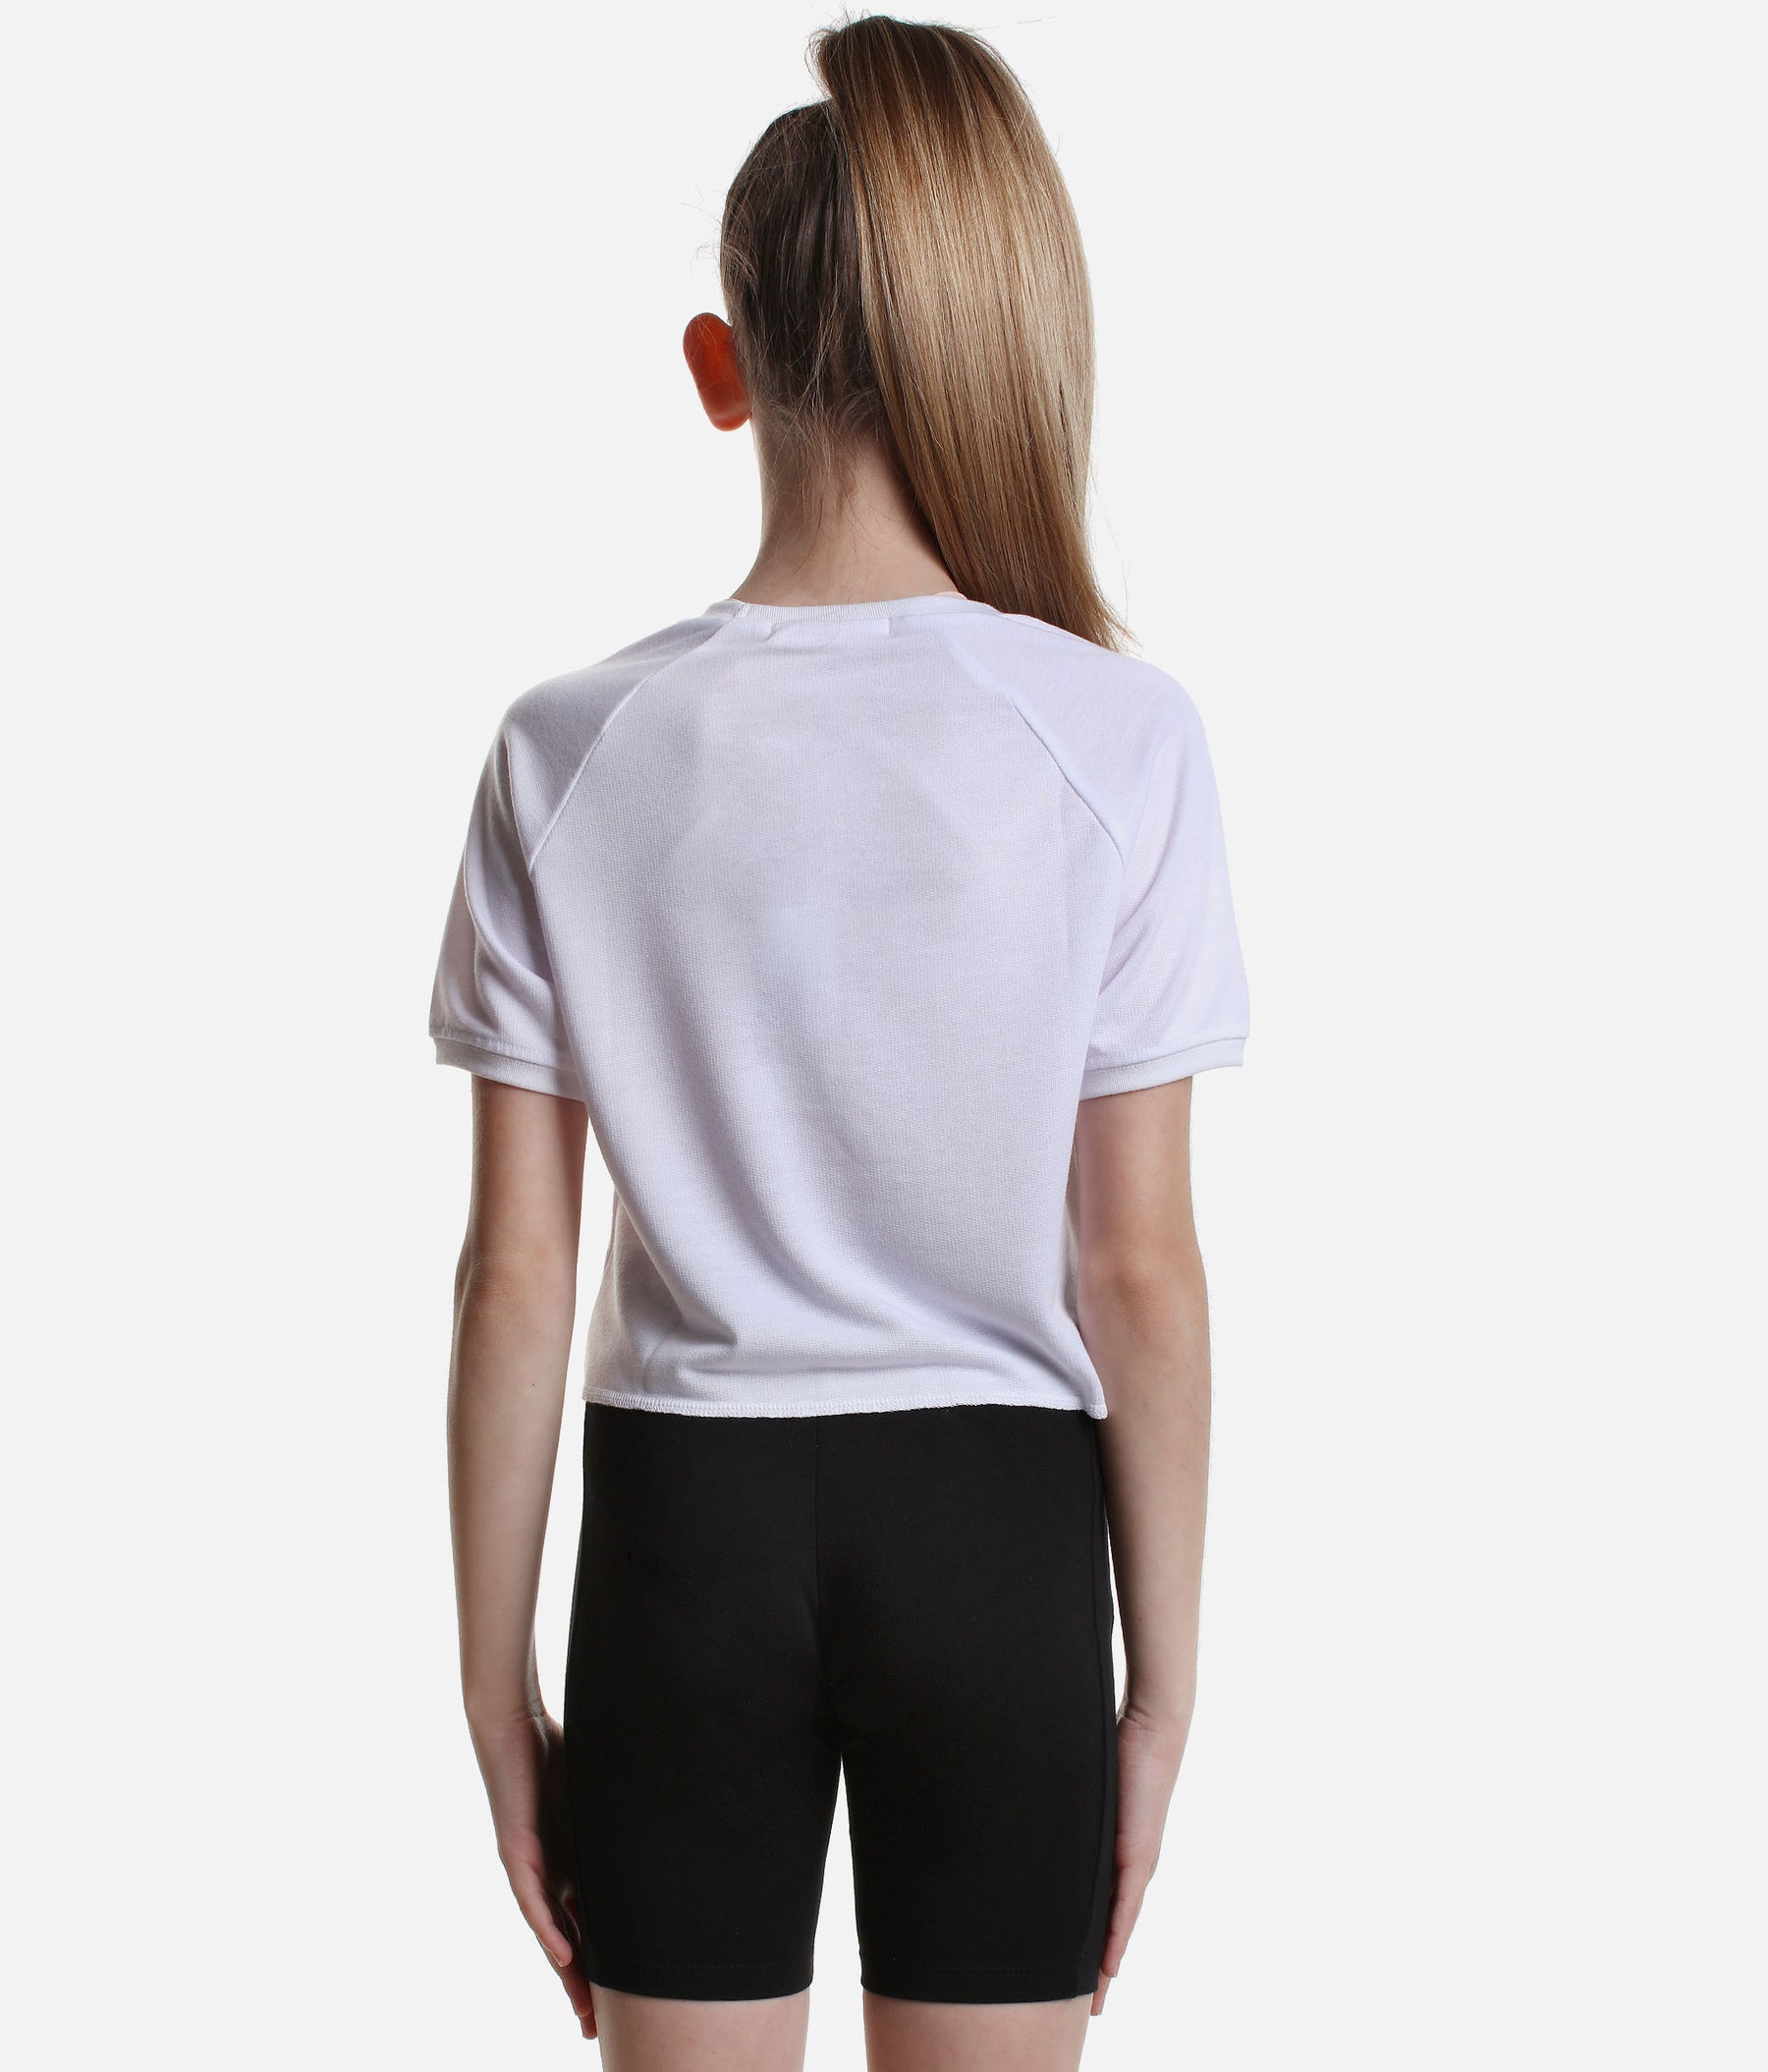 Ballerina Print T-Shirt - 030